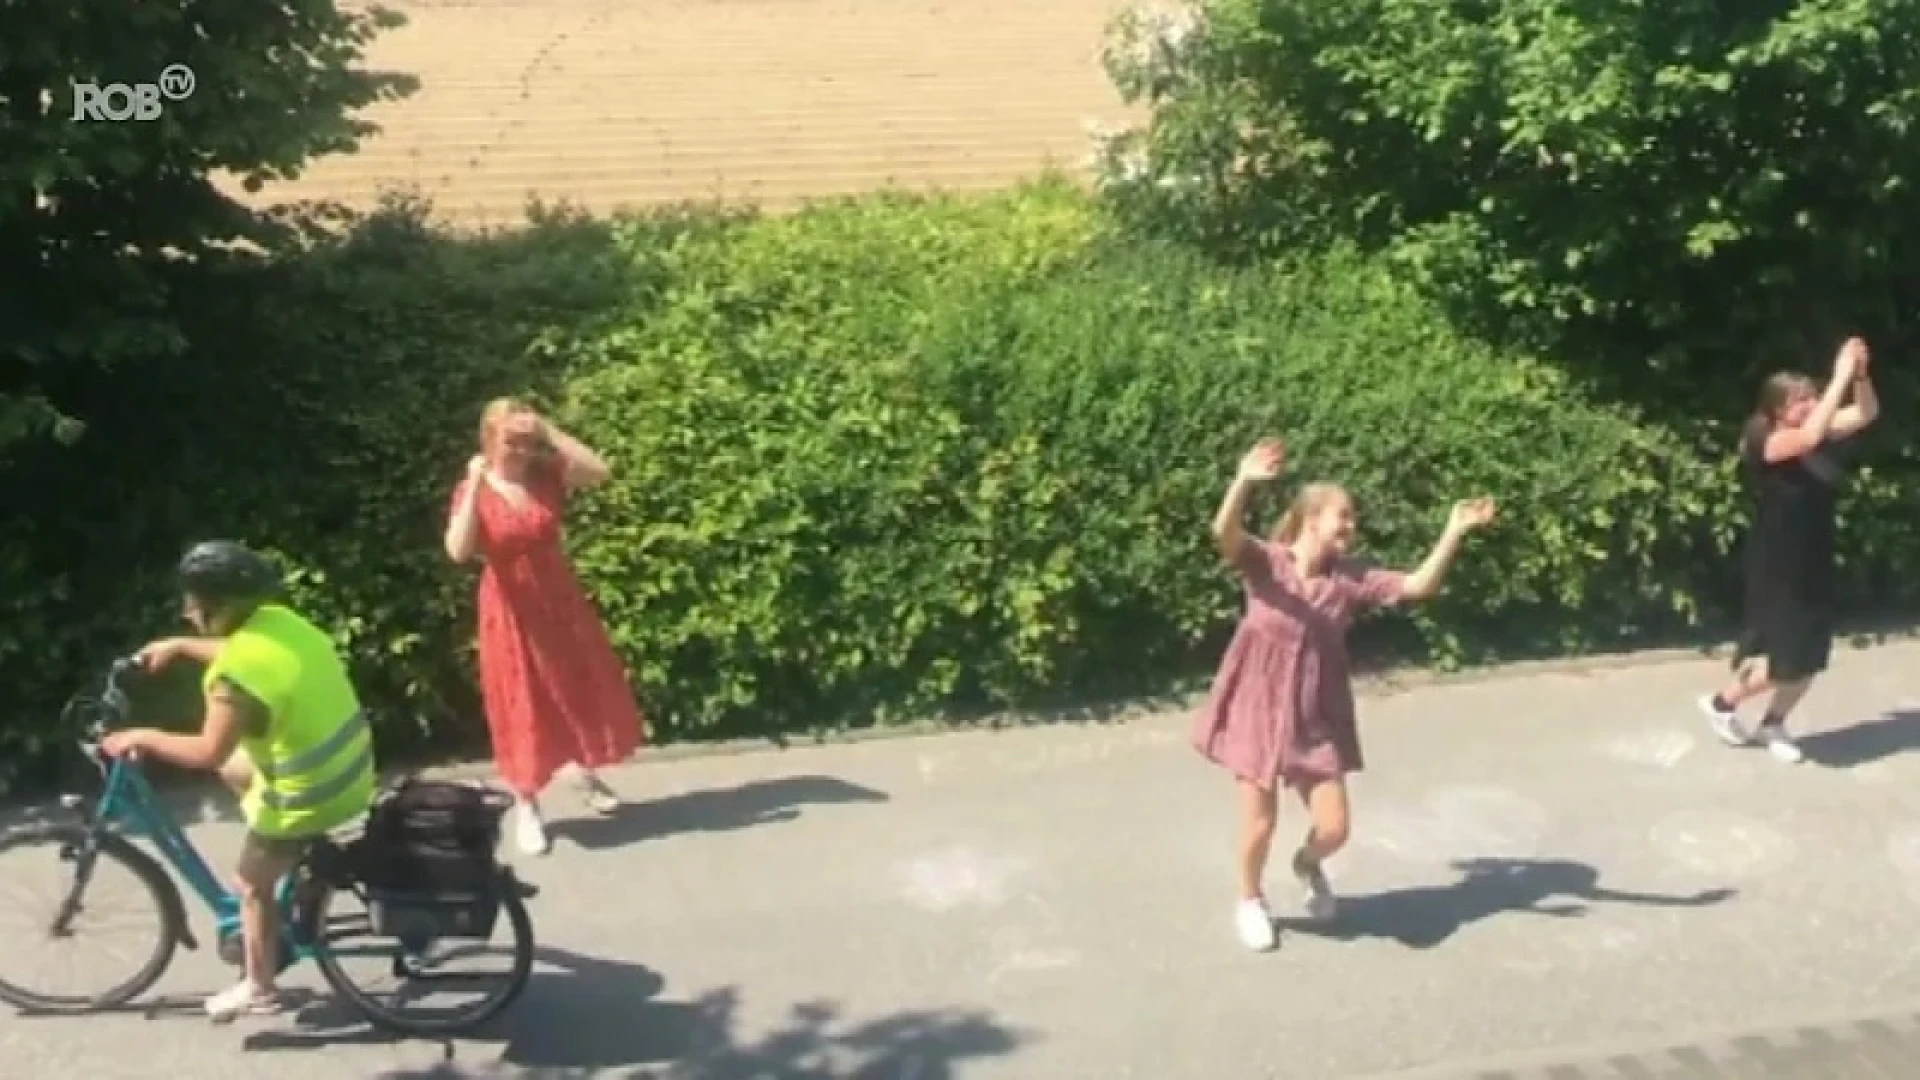 Studente uit Heverlee danst met vriendinnen voor WZC de Wingerd om bewoners te laten bewegen